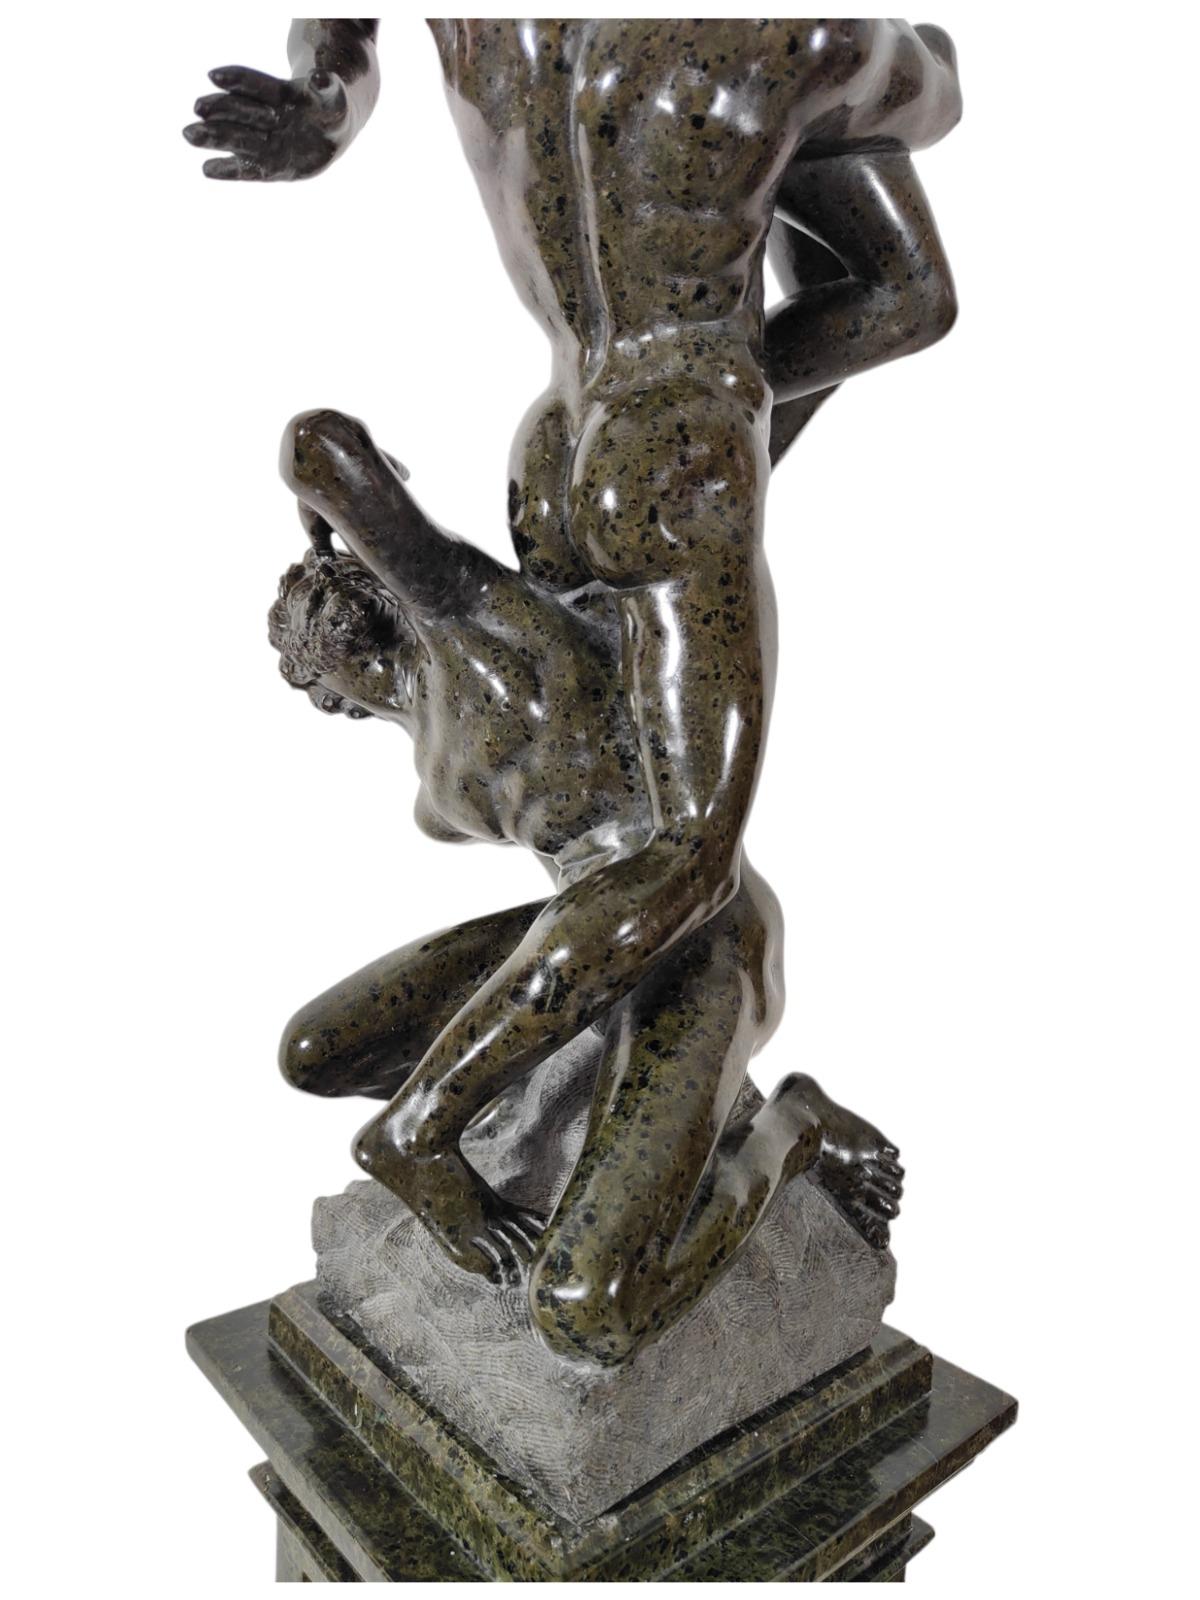 Sculpture serpentine. Le 19e siècle.
Elle représente l'enlèvement de Sabina et a été réalisée à Rome-Italie au XIXe siècle : 98 cm de hauteur.